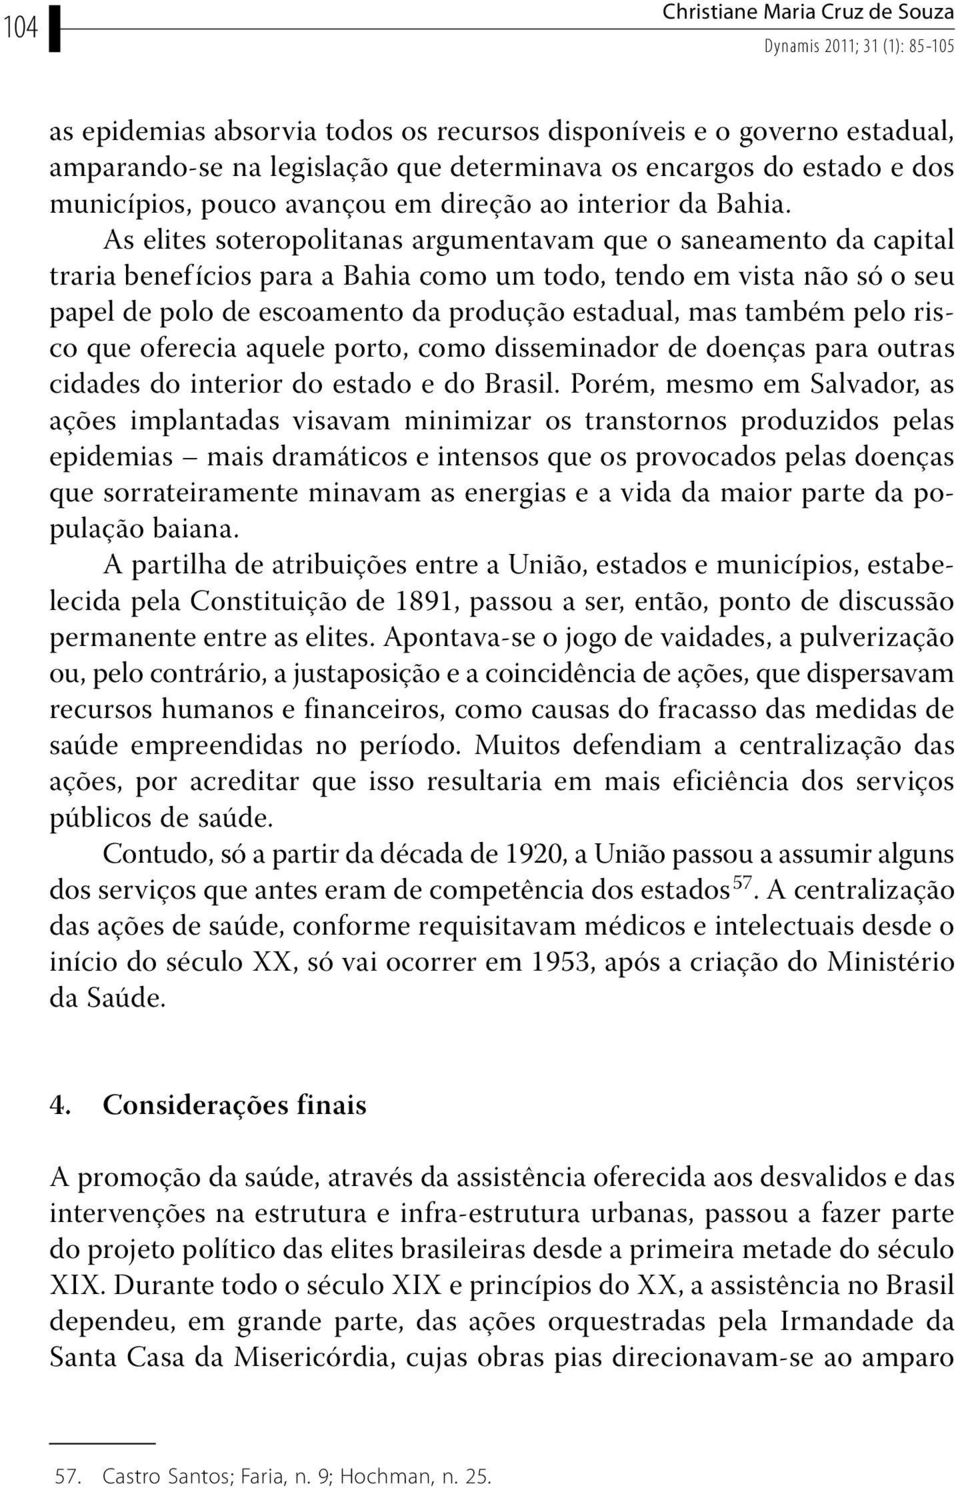 As elites soteropolitanas argumentavam que o saneamento da capital traria benef ícios para a Bahia como um todo, tendo em vista não só o seu papel de polo de escoamento da produção estadual, mas